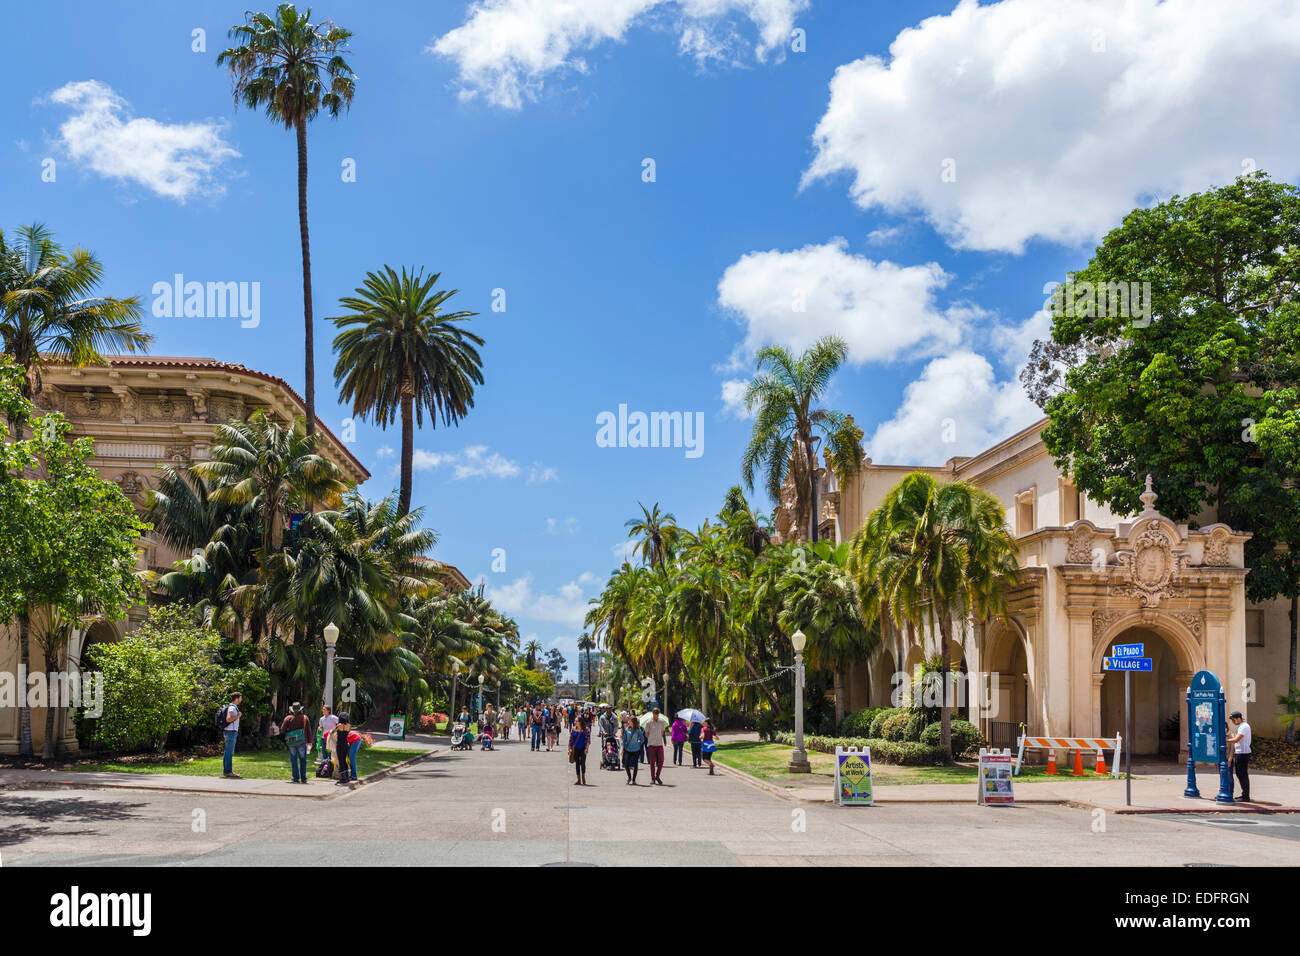 Museums along El Prado in Balboa Park, San Diego, California, USA Stock Photo